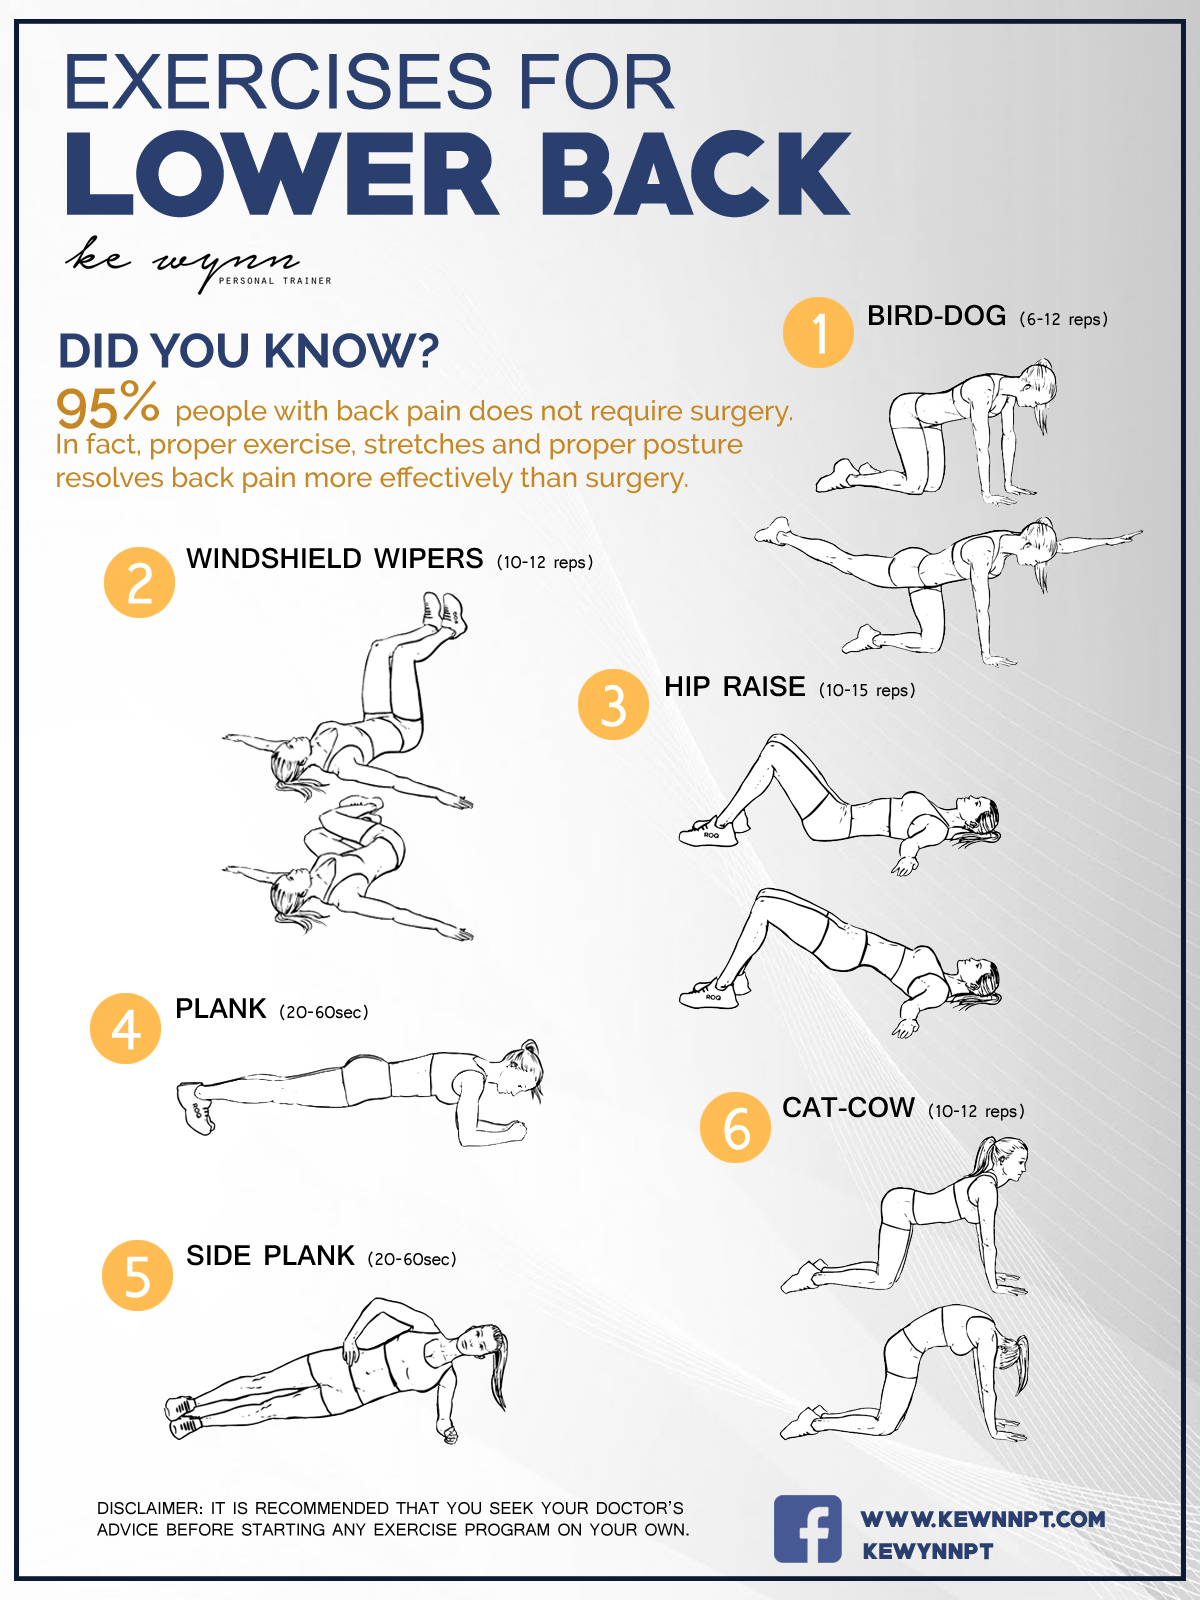 Exercises for Lower Back | Ke Wynn Medical Fitness Center | Sports ...